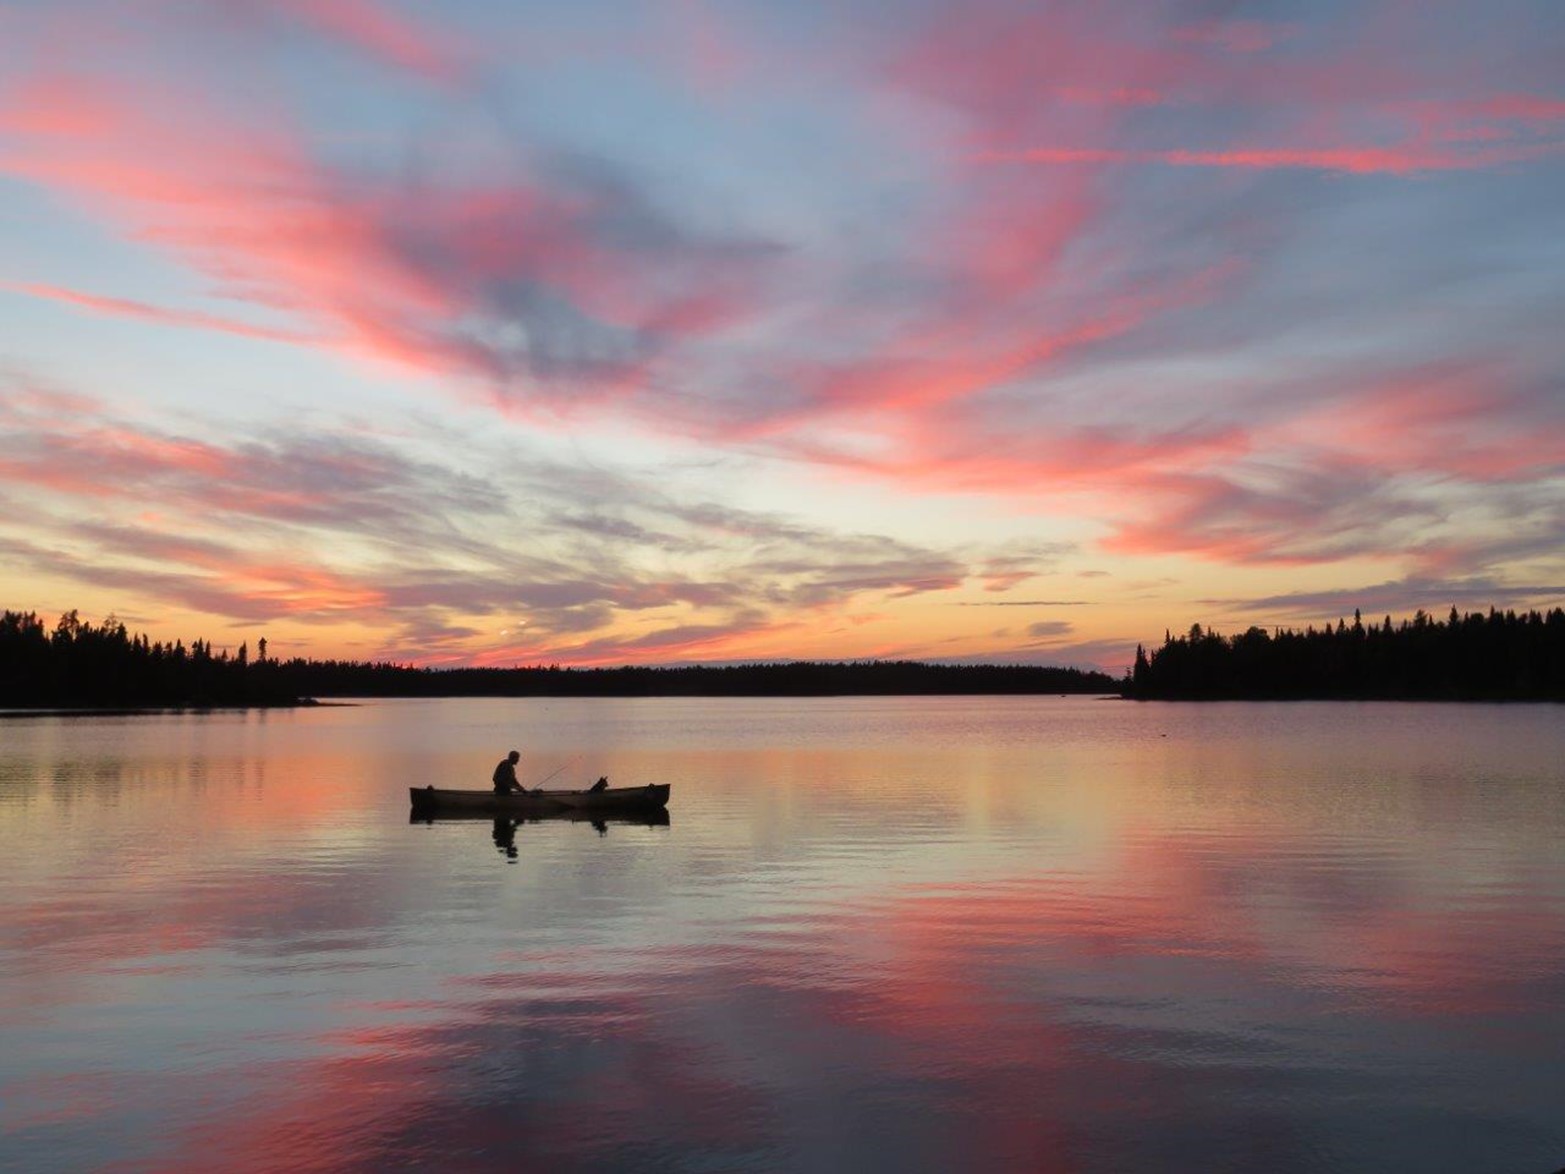 canoe on lake at sunset